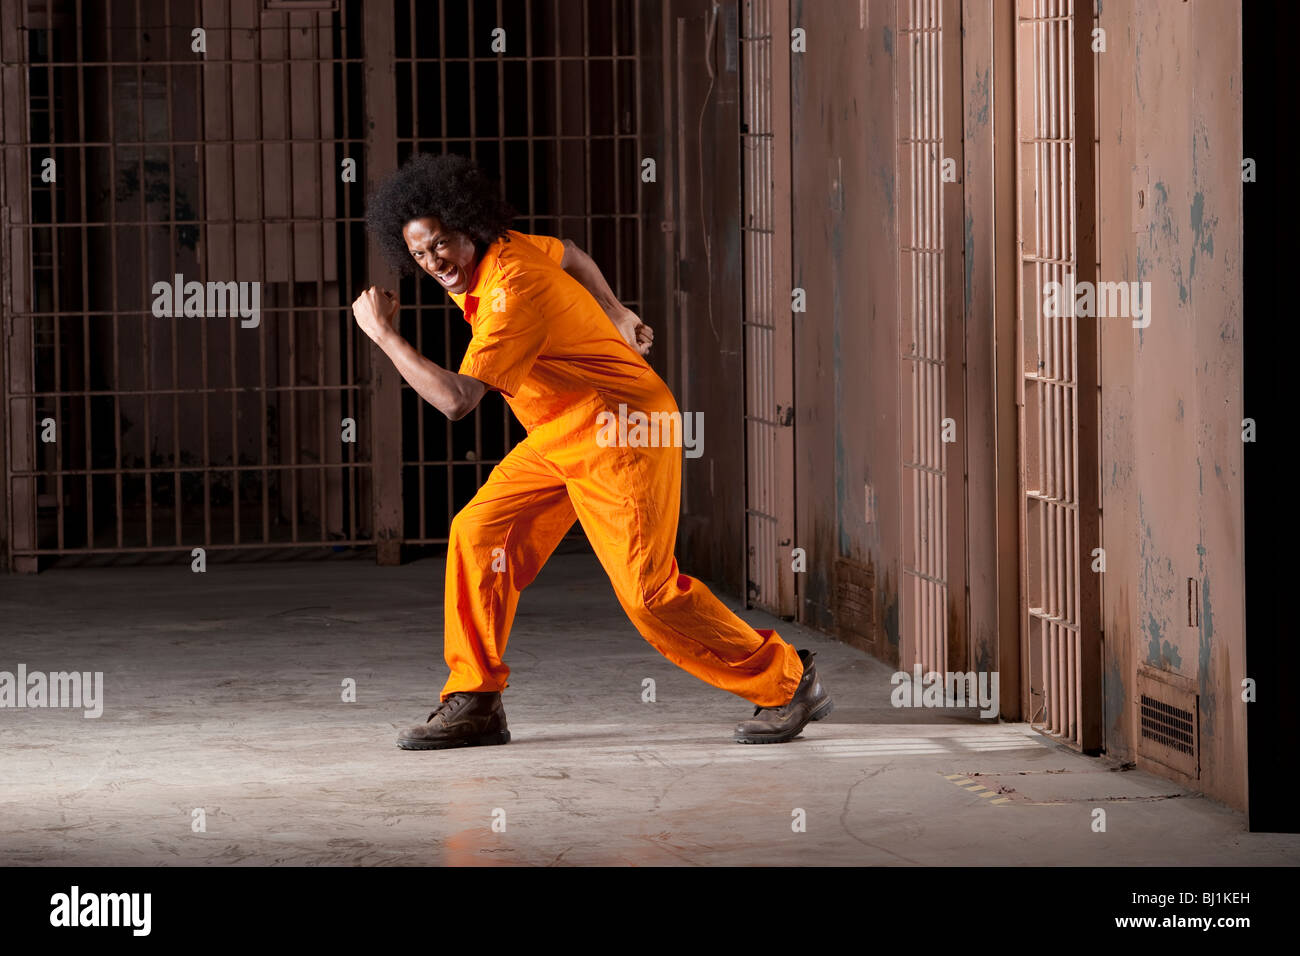 28,073 Prison Escape Images, Stock Photos, 3D objects, & Vectors